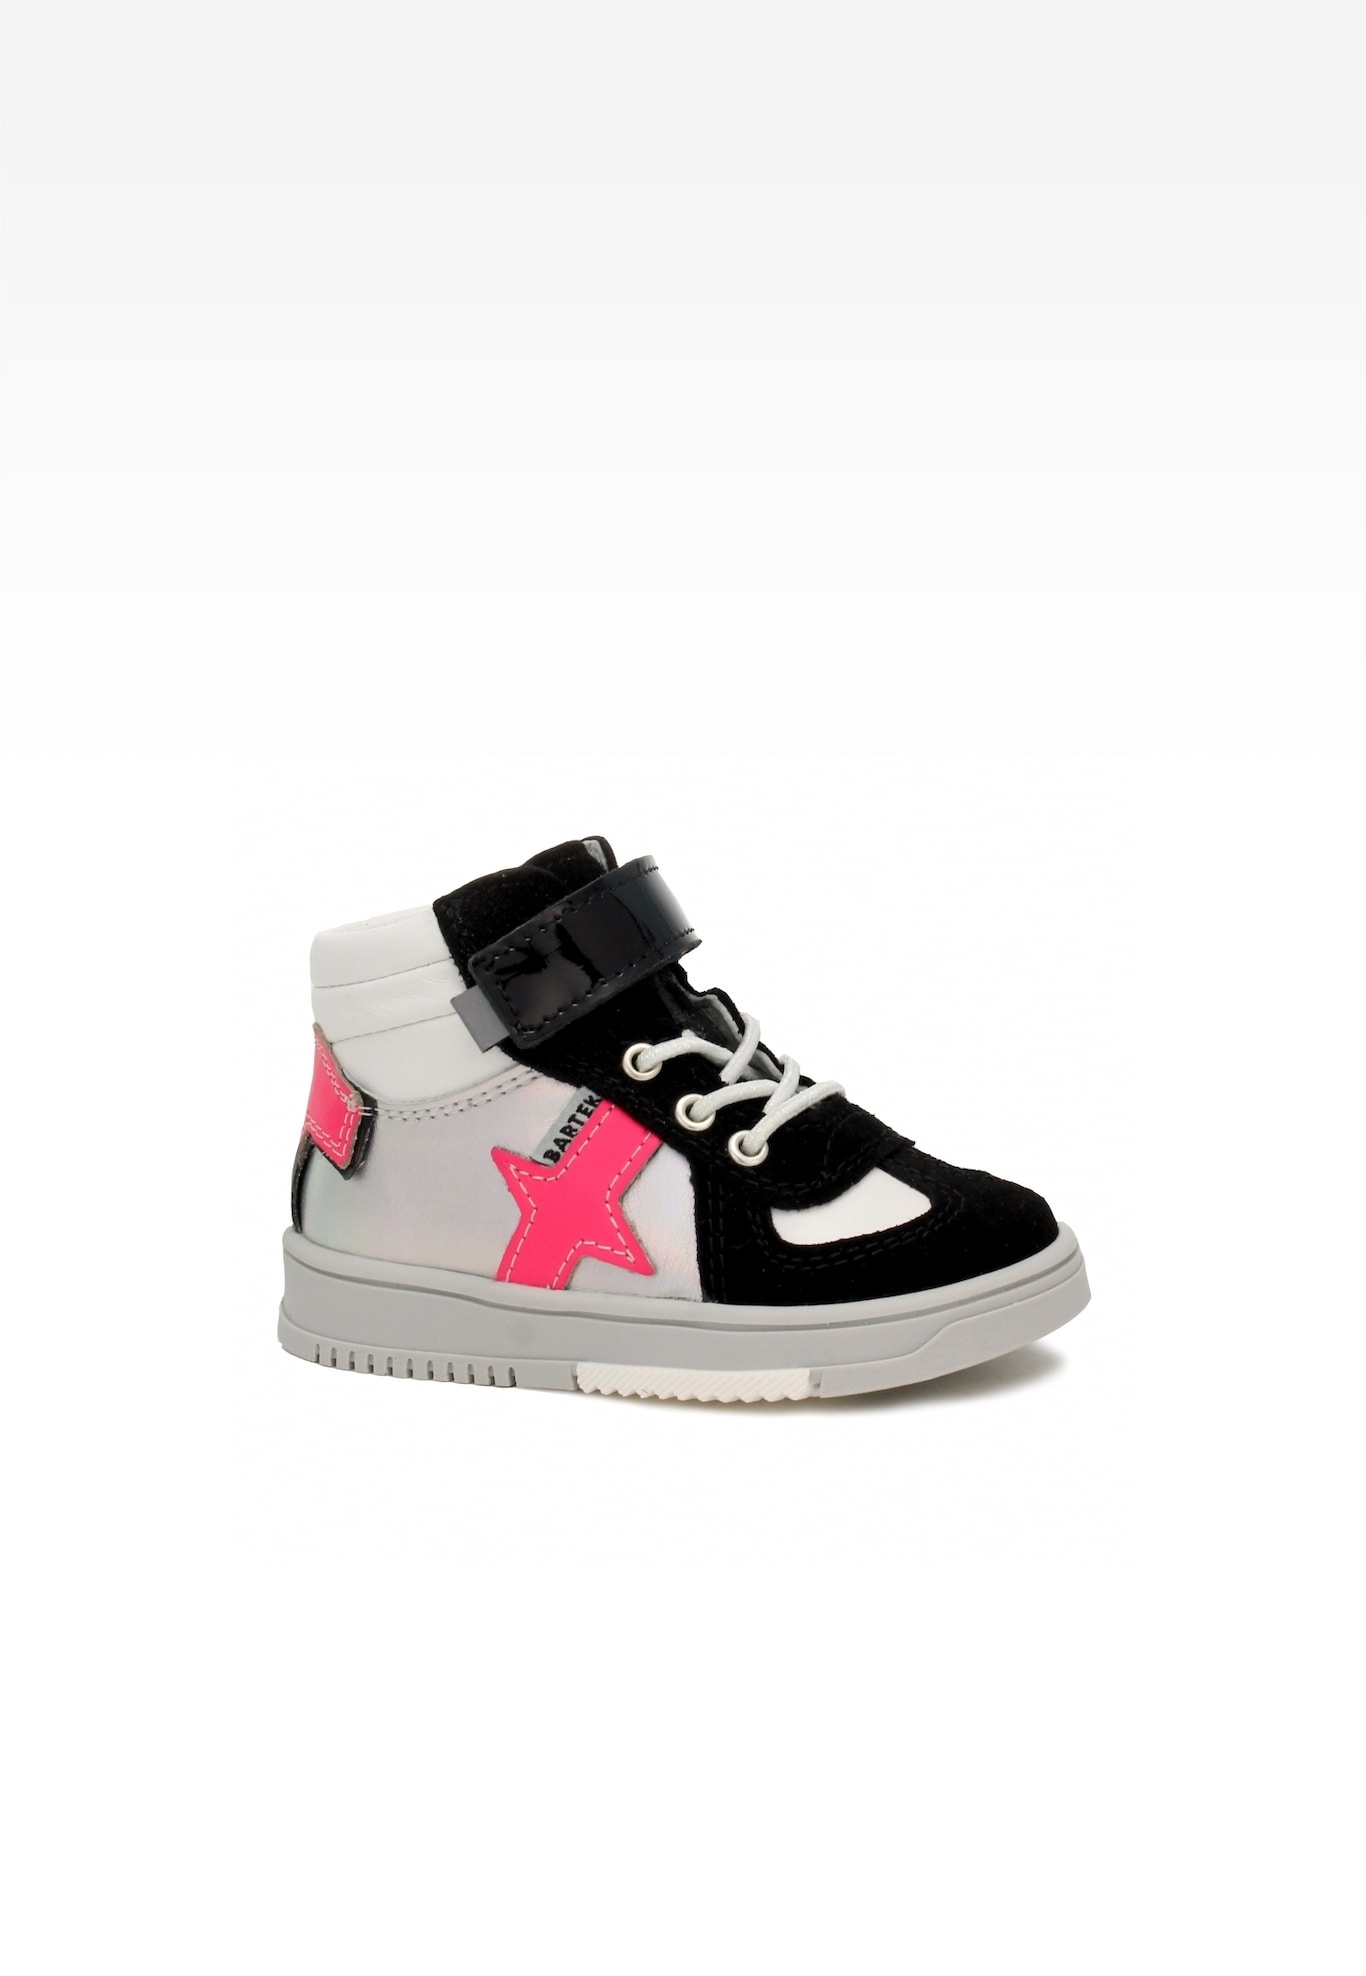 Sneakers BARTEK 11577012, dla dziewcząt, biało-czarny